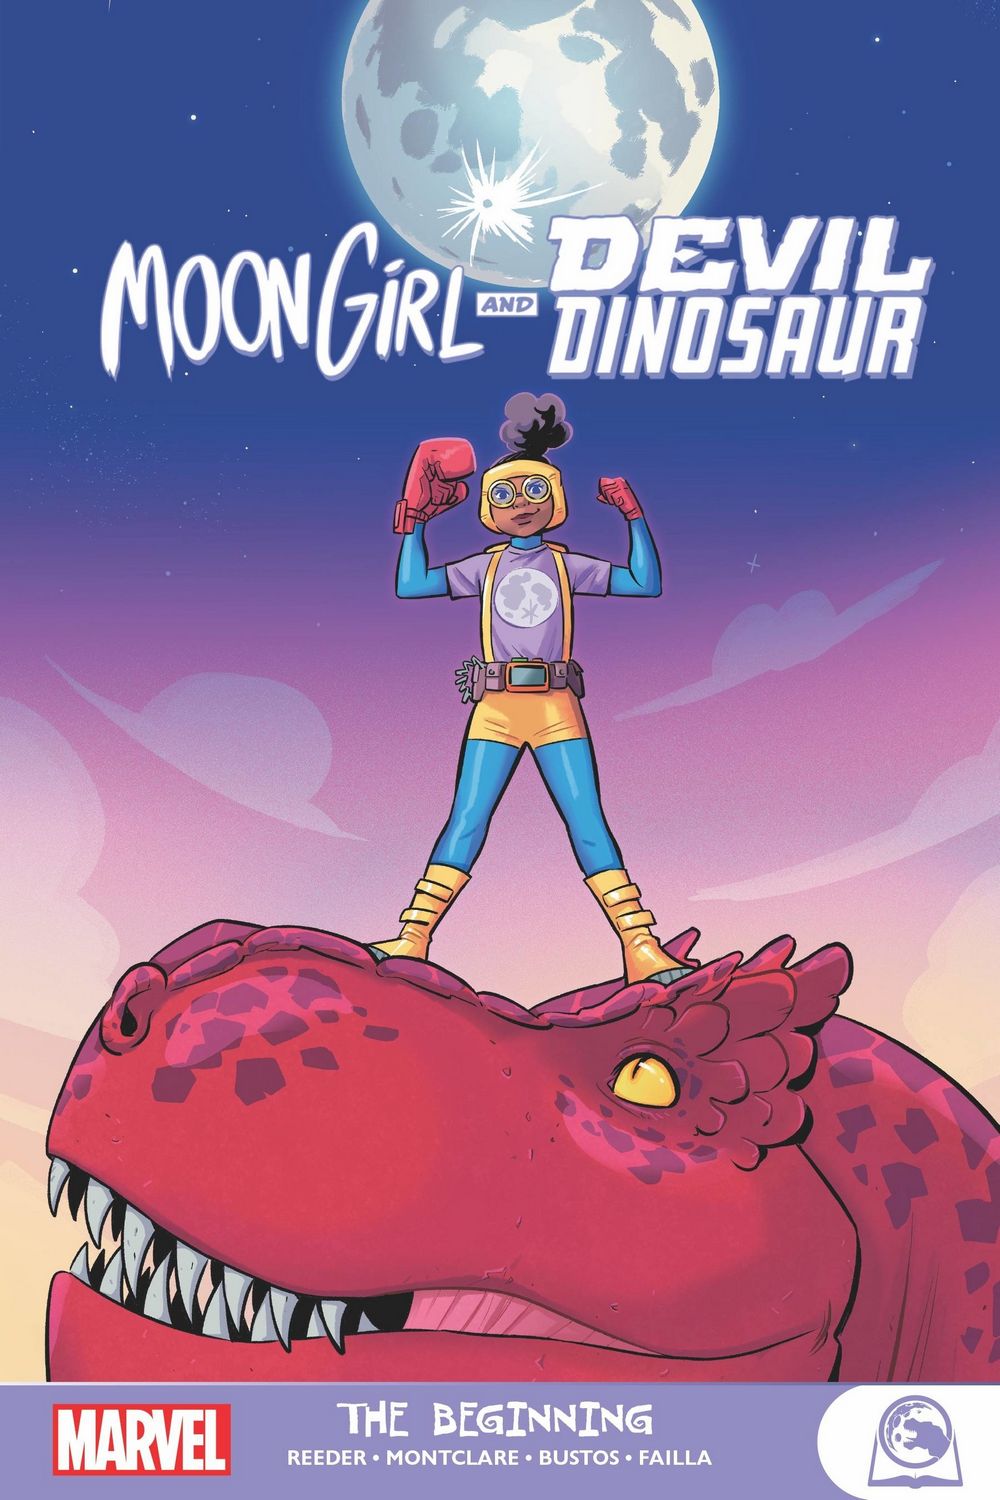 Moon Girl and Devil Dinosaur GN VOL 01 Beginning